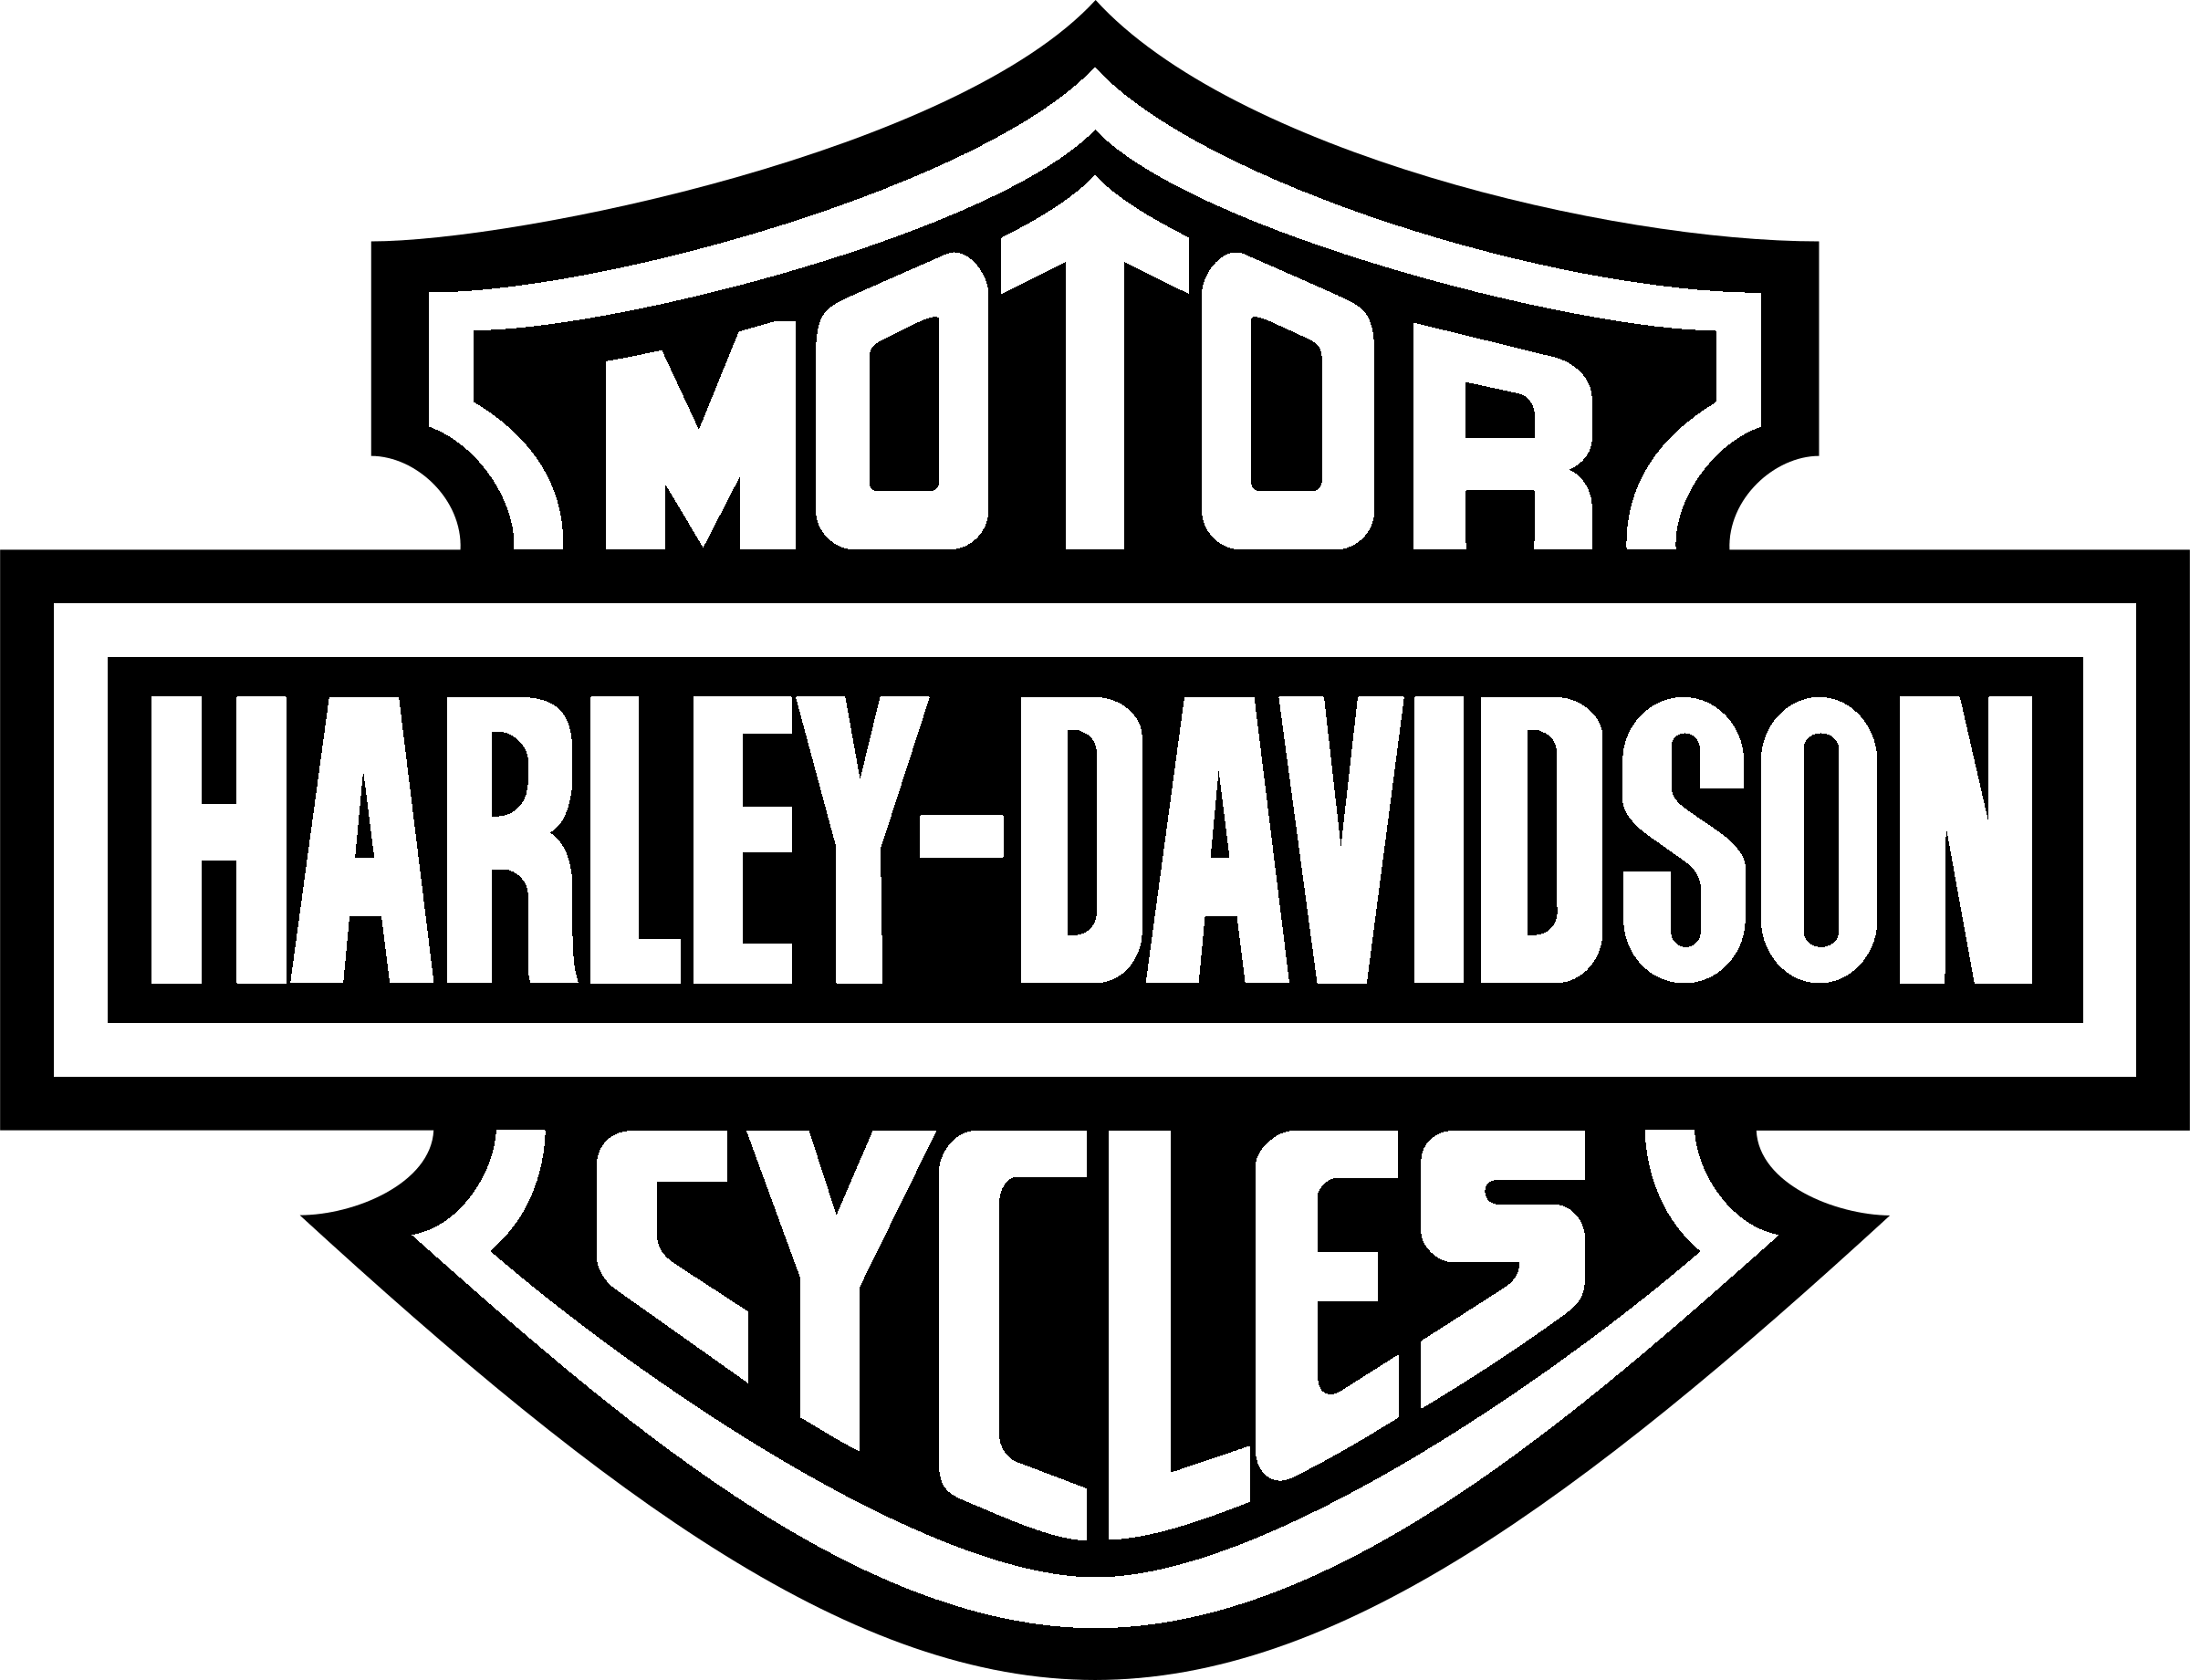 Black and White Harley-Davidson Logo - Harley Davidson Logo PNG Transparent & SVG Vector - Freebie Supply